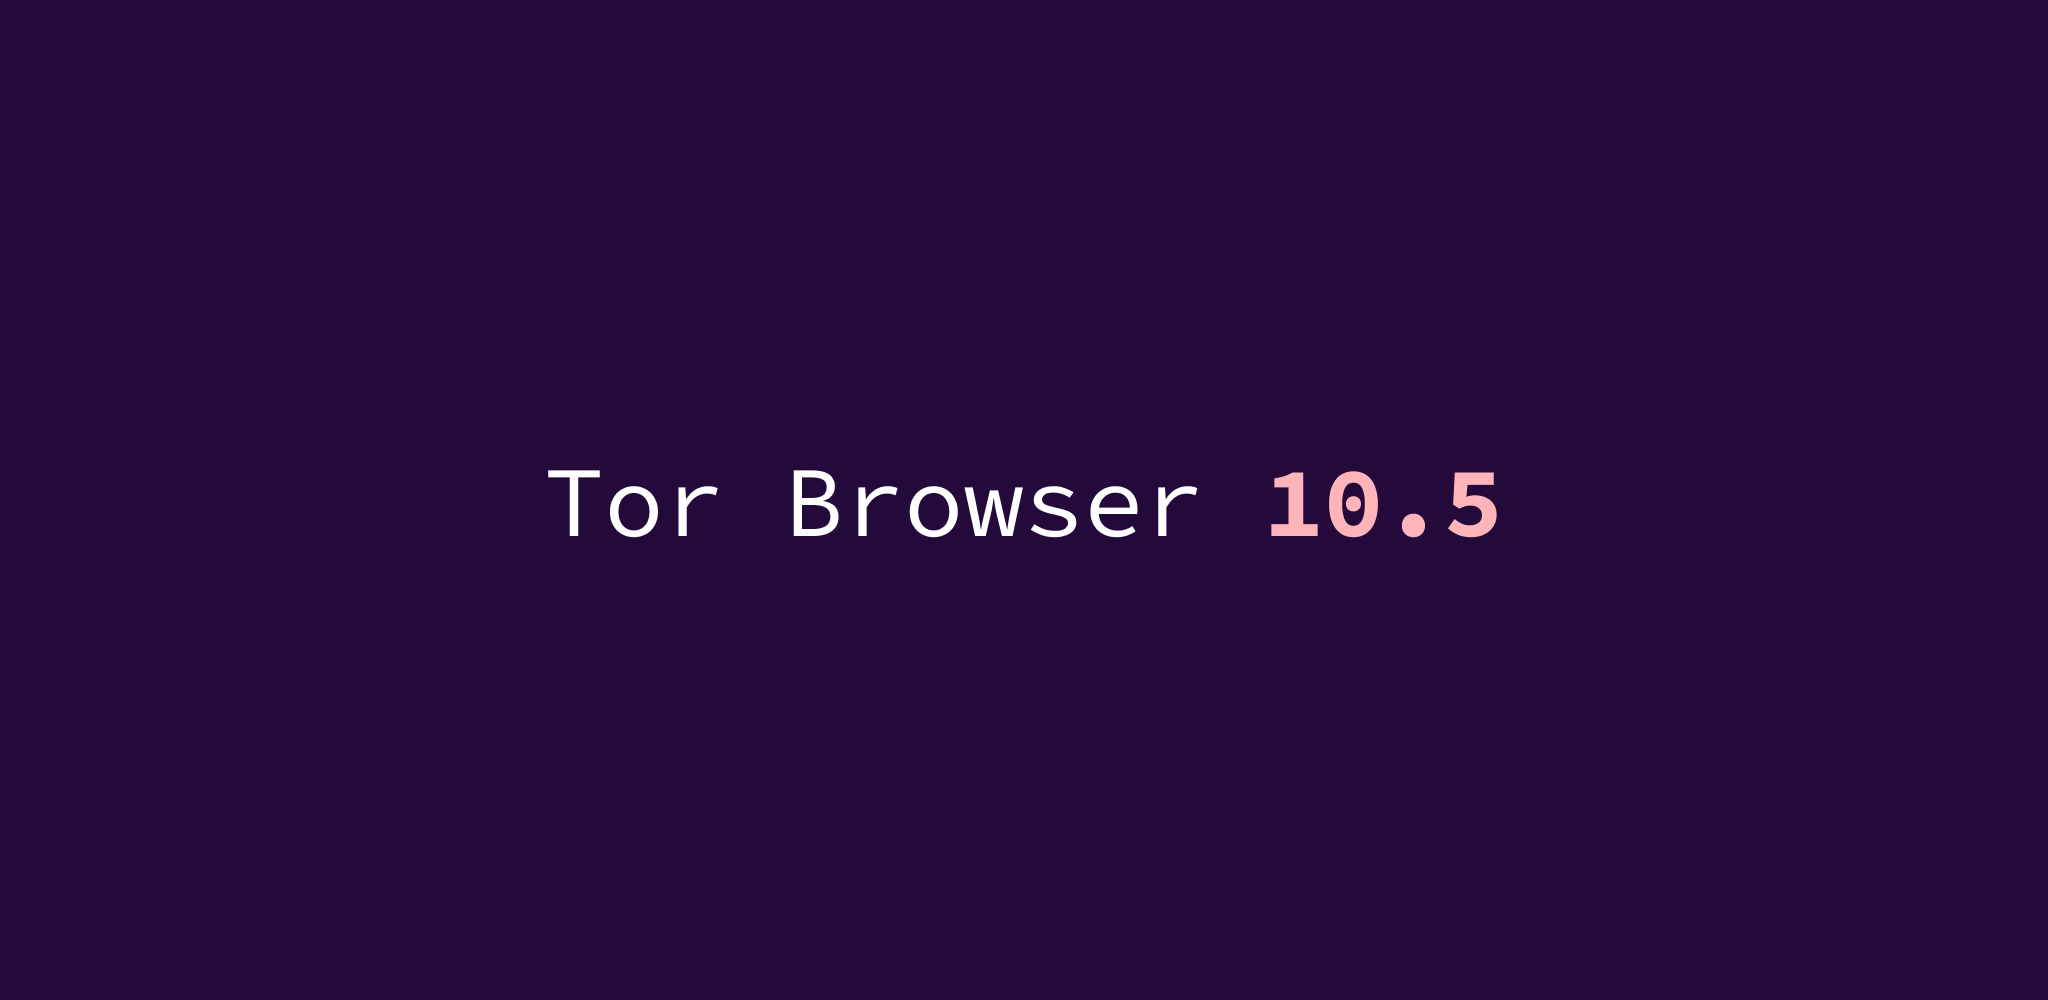 Start tor browser exe mega tor browser для wp mega